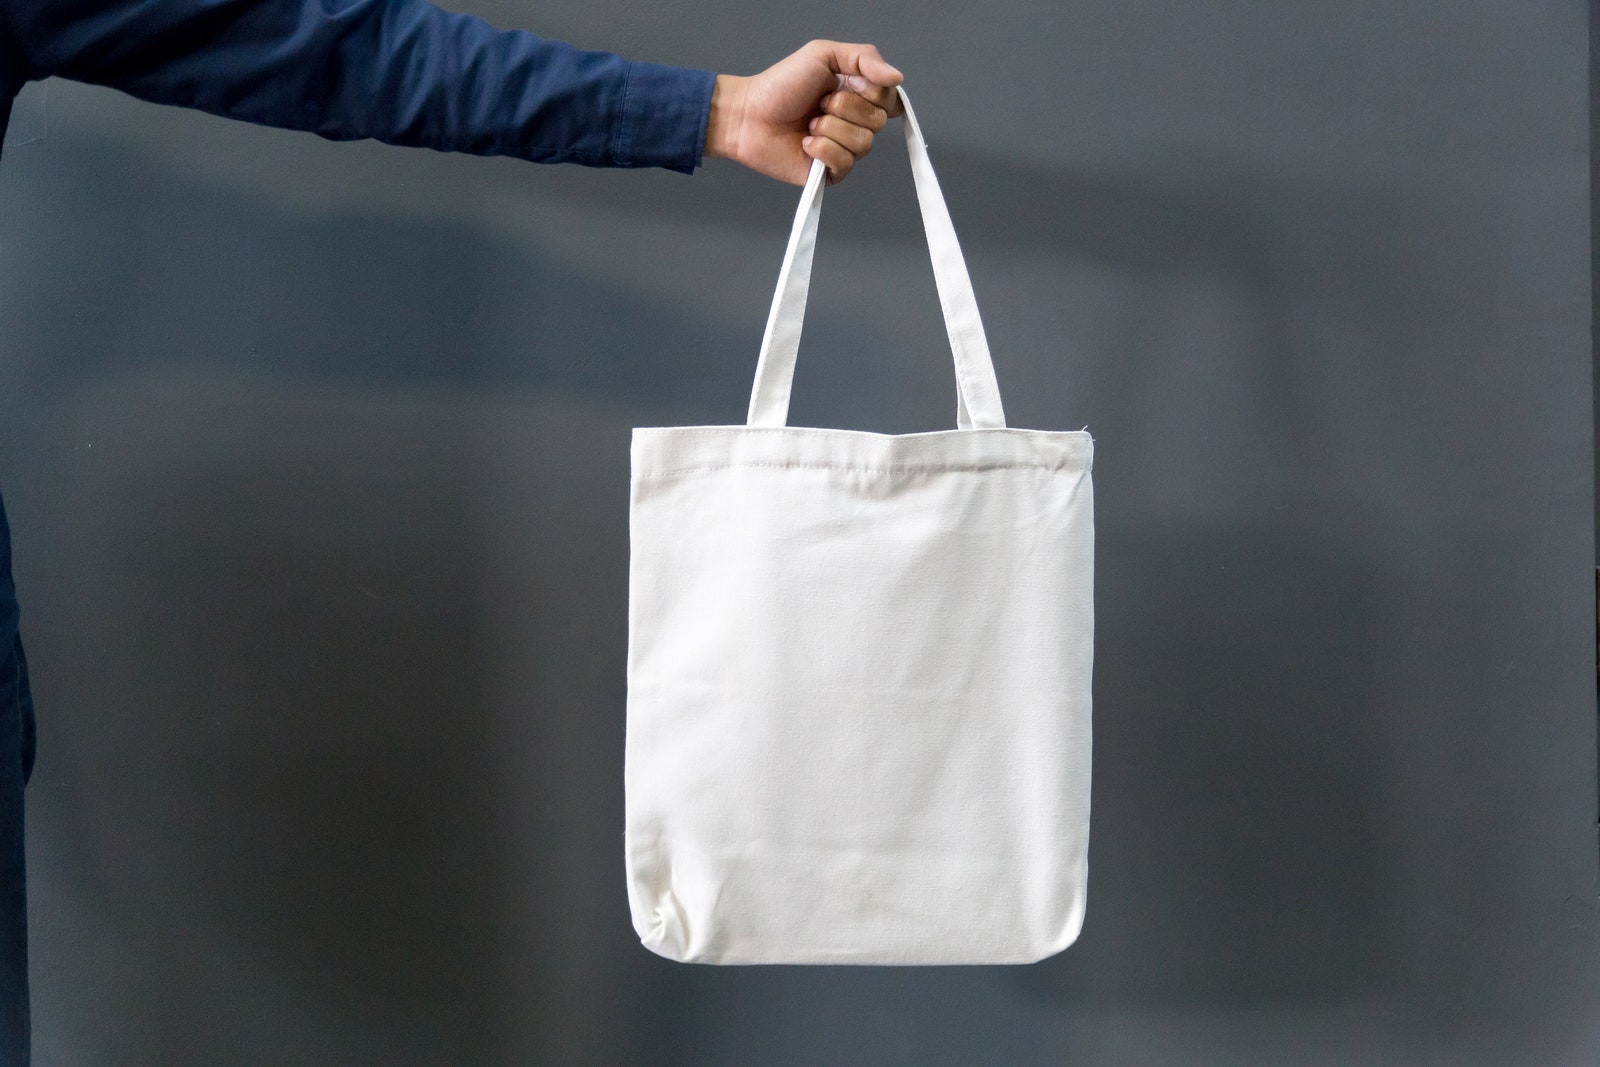 Шаг к осознанности почему сумки из хлопка — не лучшая замена пластиковым пакетам